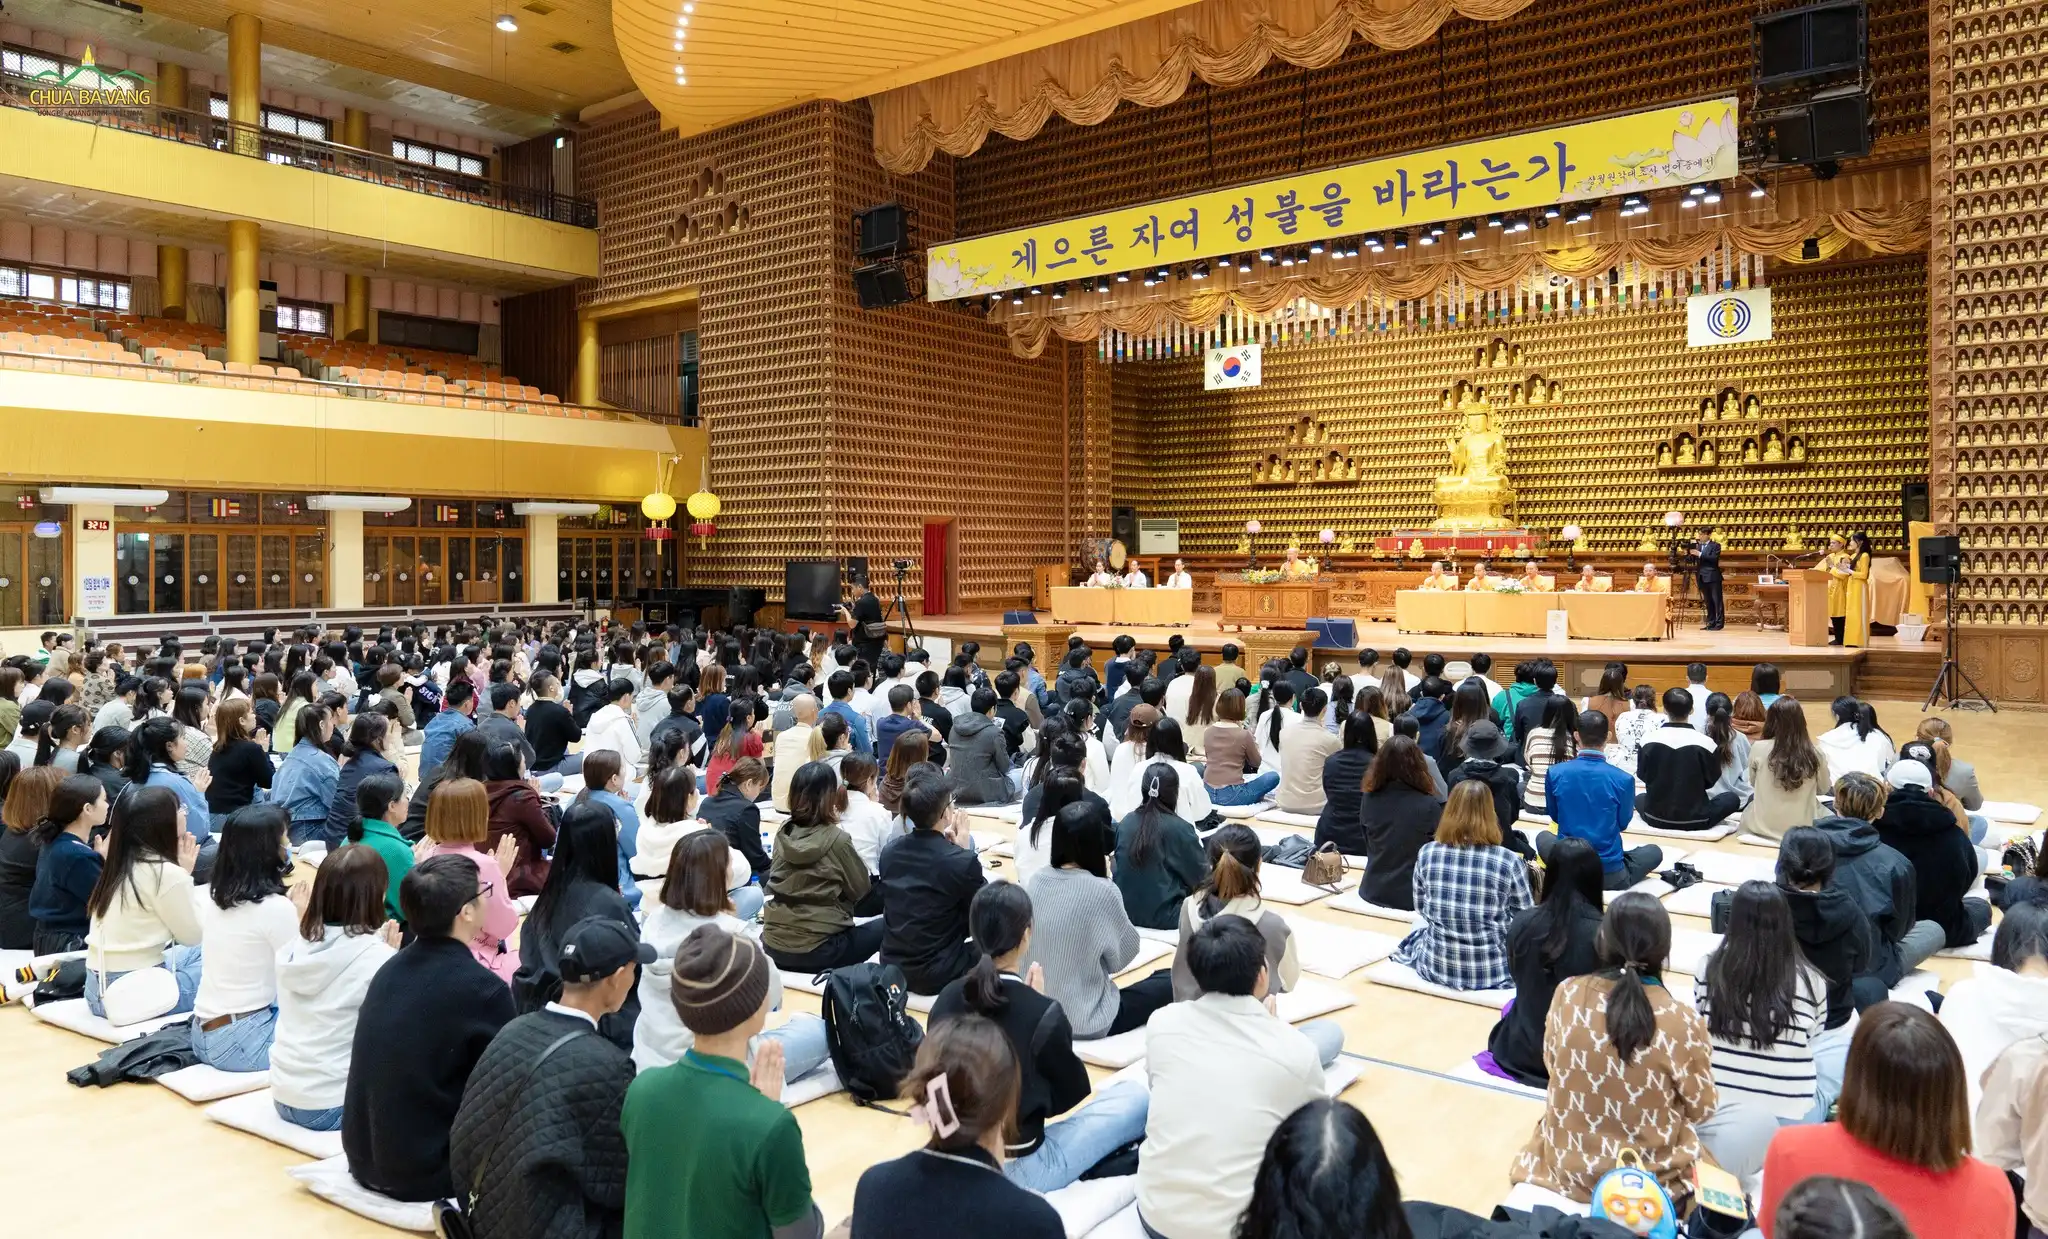 Buổi giảng Pháp tại chùa Tam Quang thu hút sự tham gia của đông đảo các Phật tử, người dân Việt đang sinh sống tại Hàn Quốc